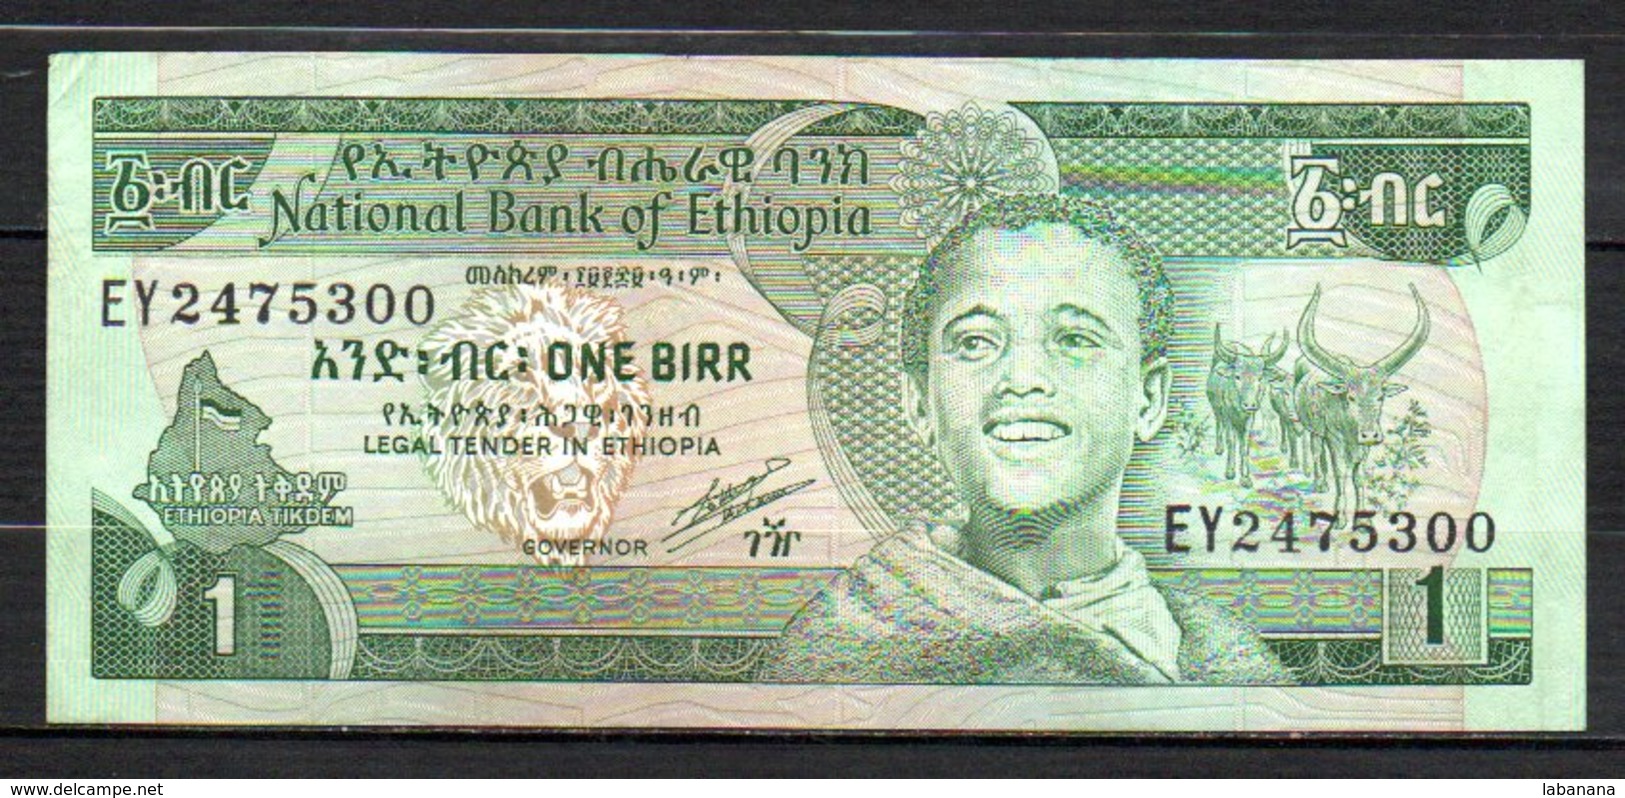 329-Ethiopie Billet De 1 Birr 1991 EY247 Sig. 4 - Ethiopie